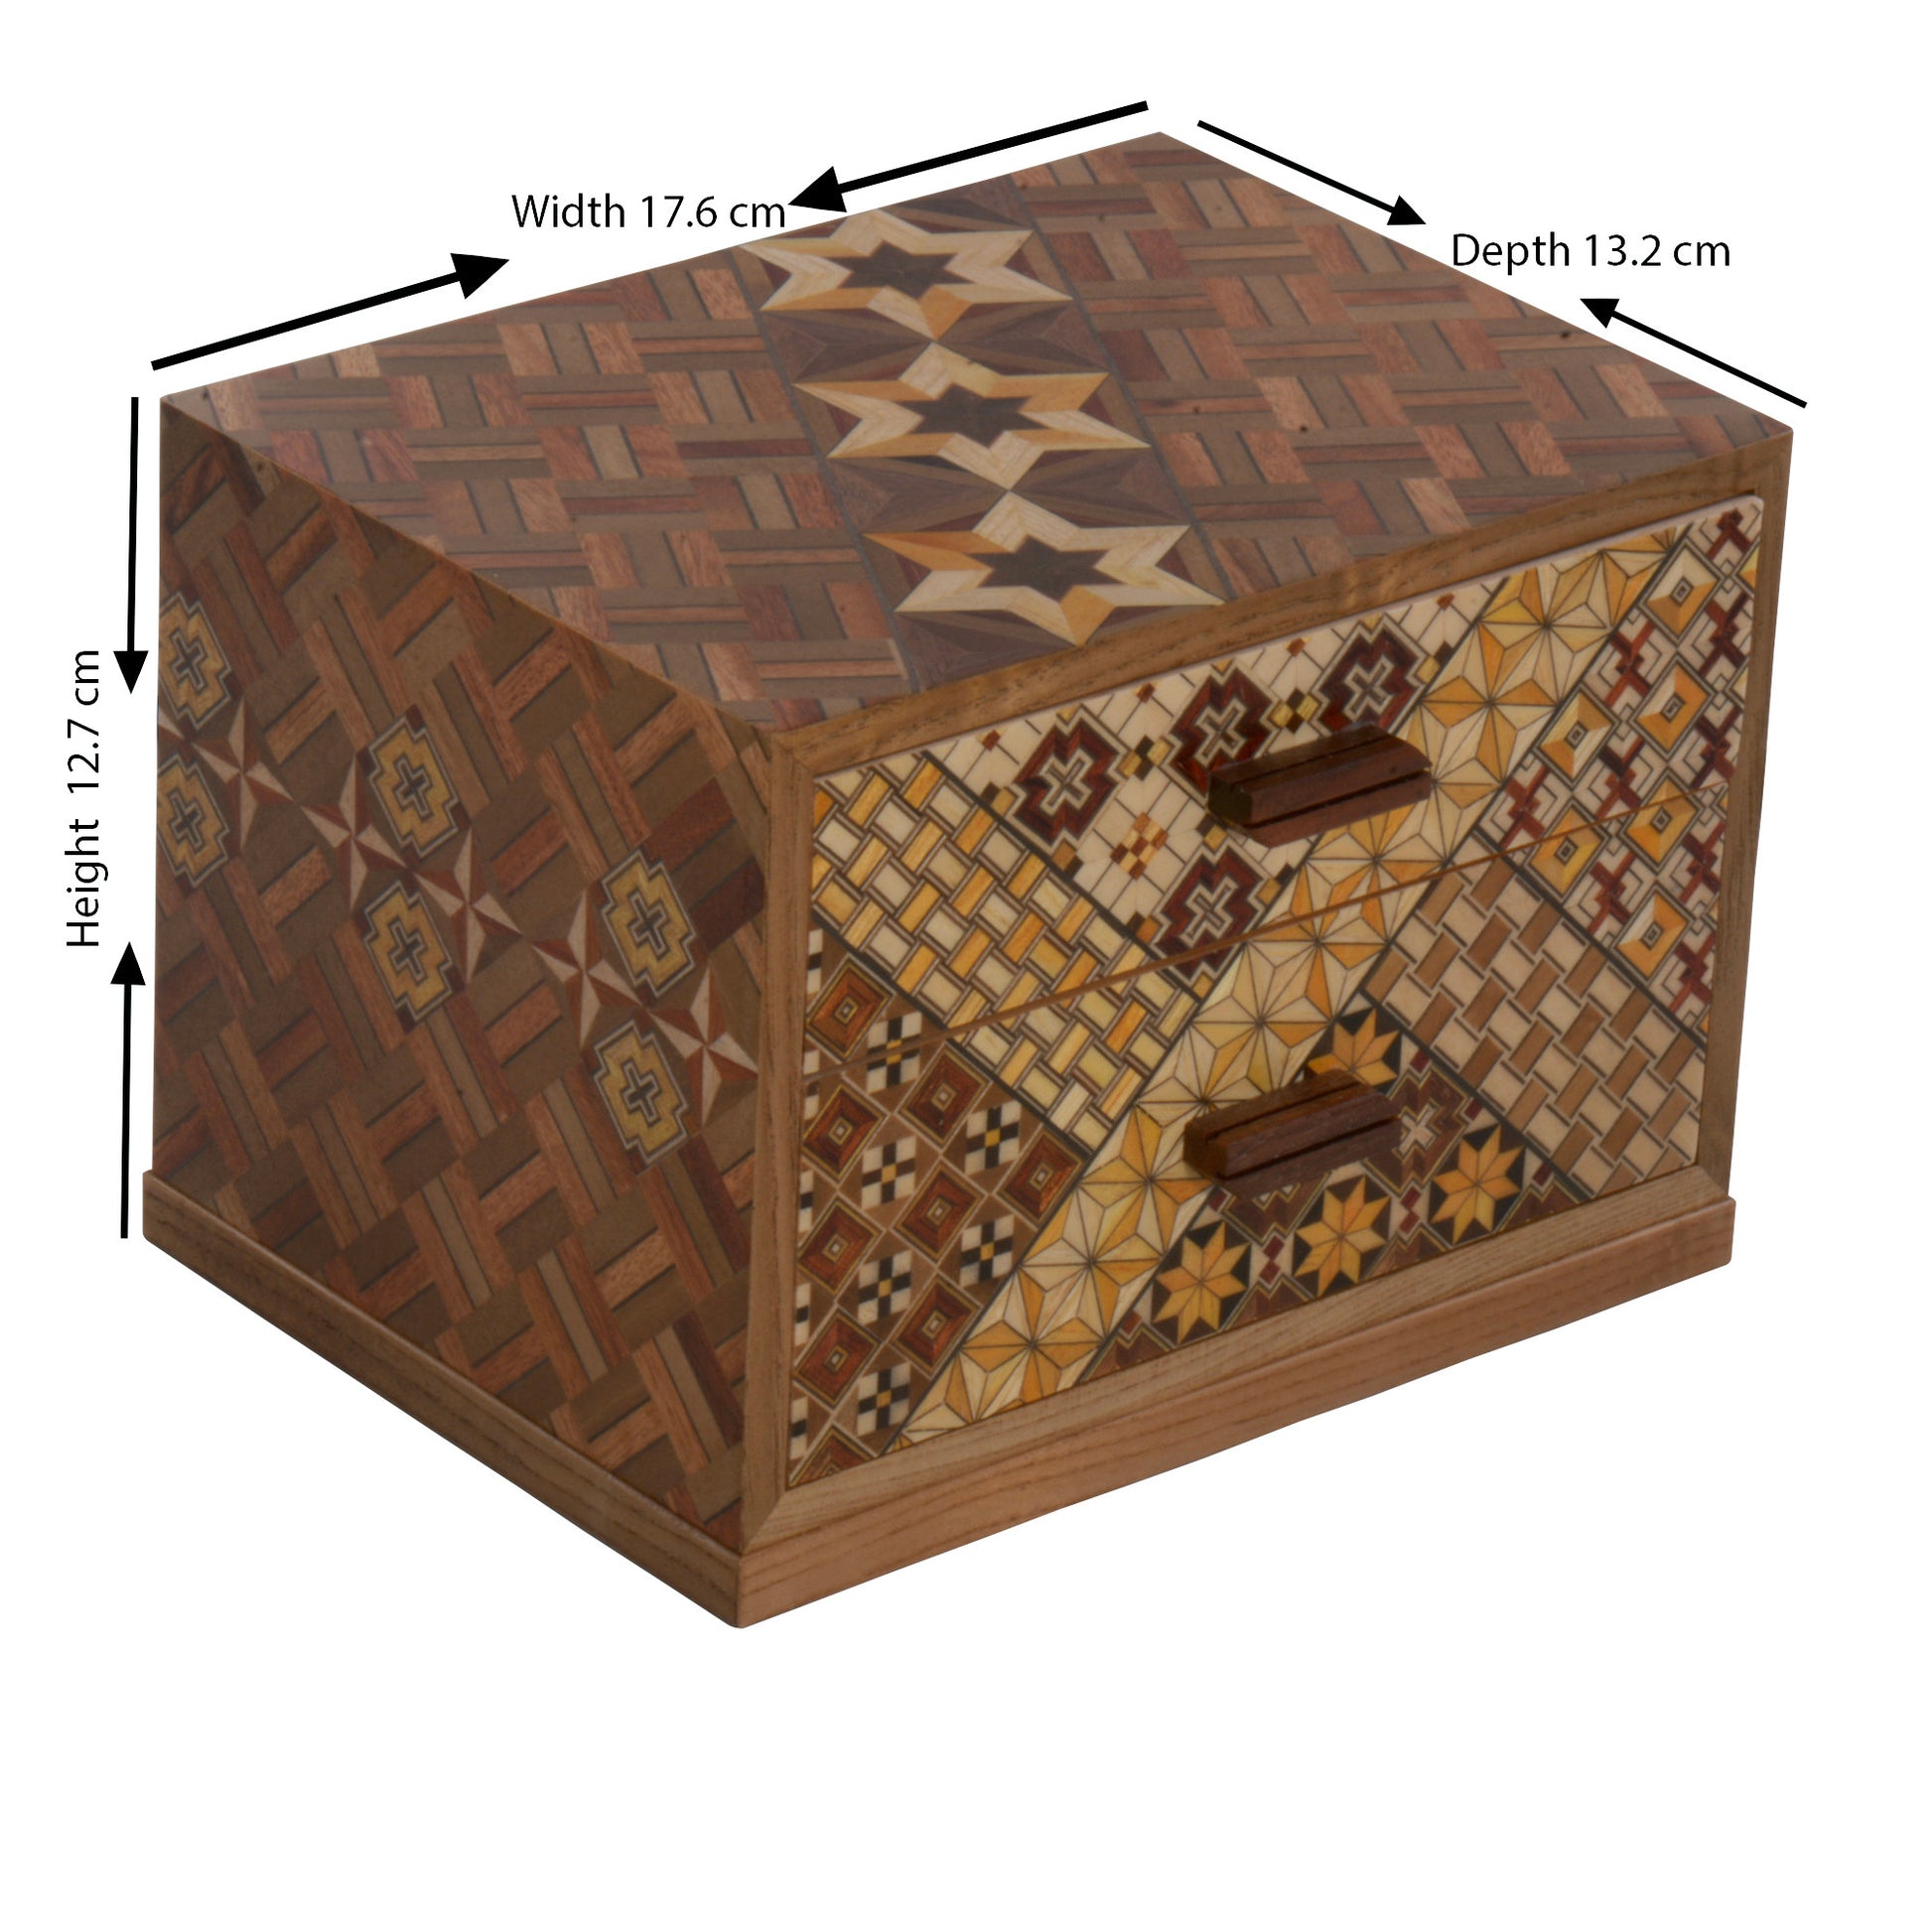 Wooden Jewelry Box with 2 Drawers and Yosegi pattern